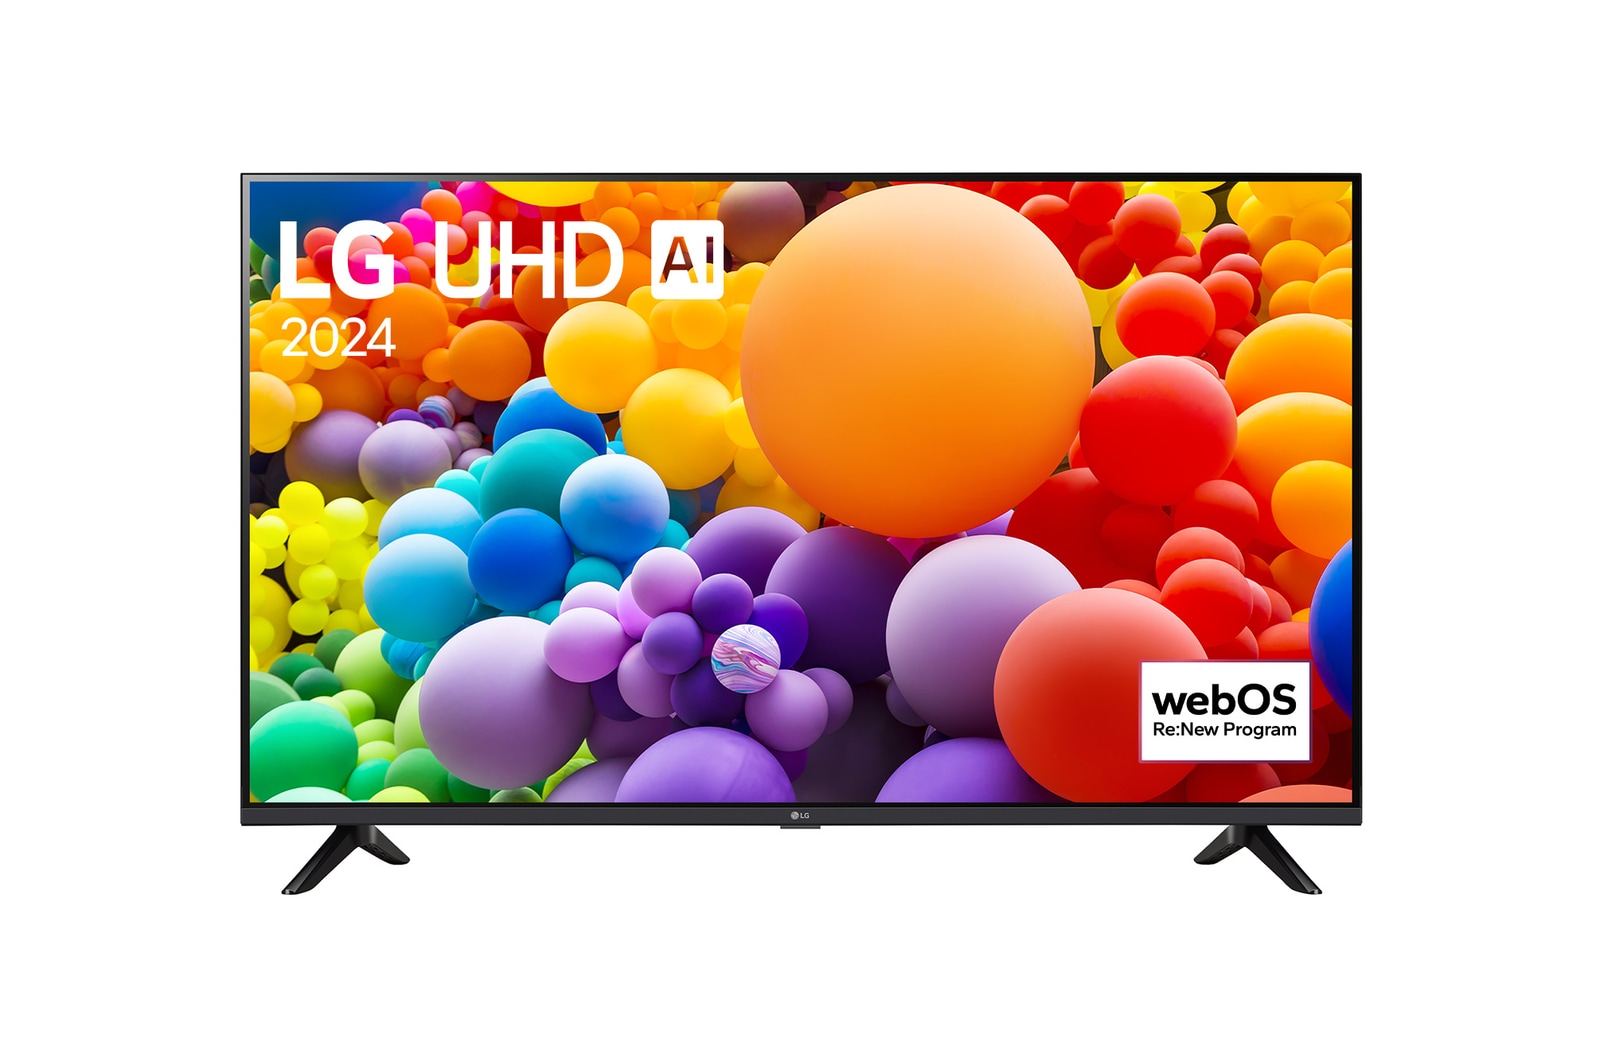 LG 55" LG UHD AI UT73 4K Smart TV 2024, 55UT73006LA